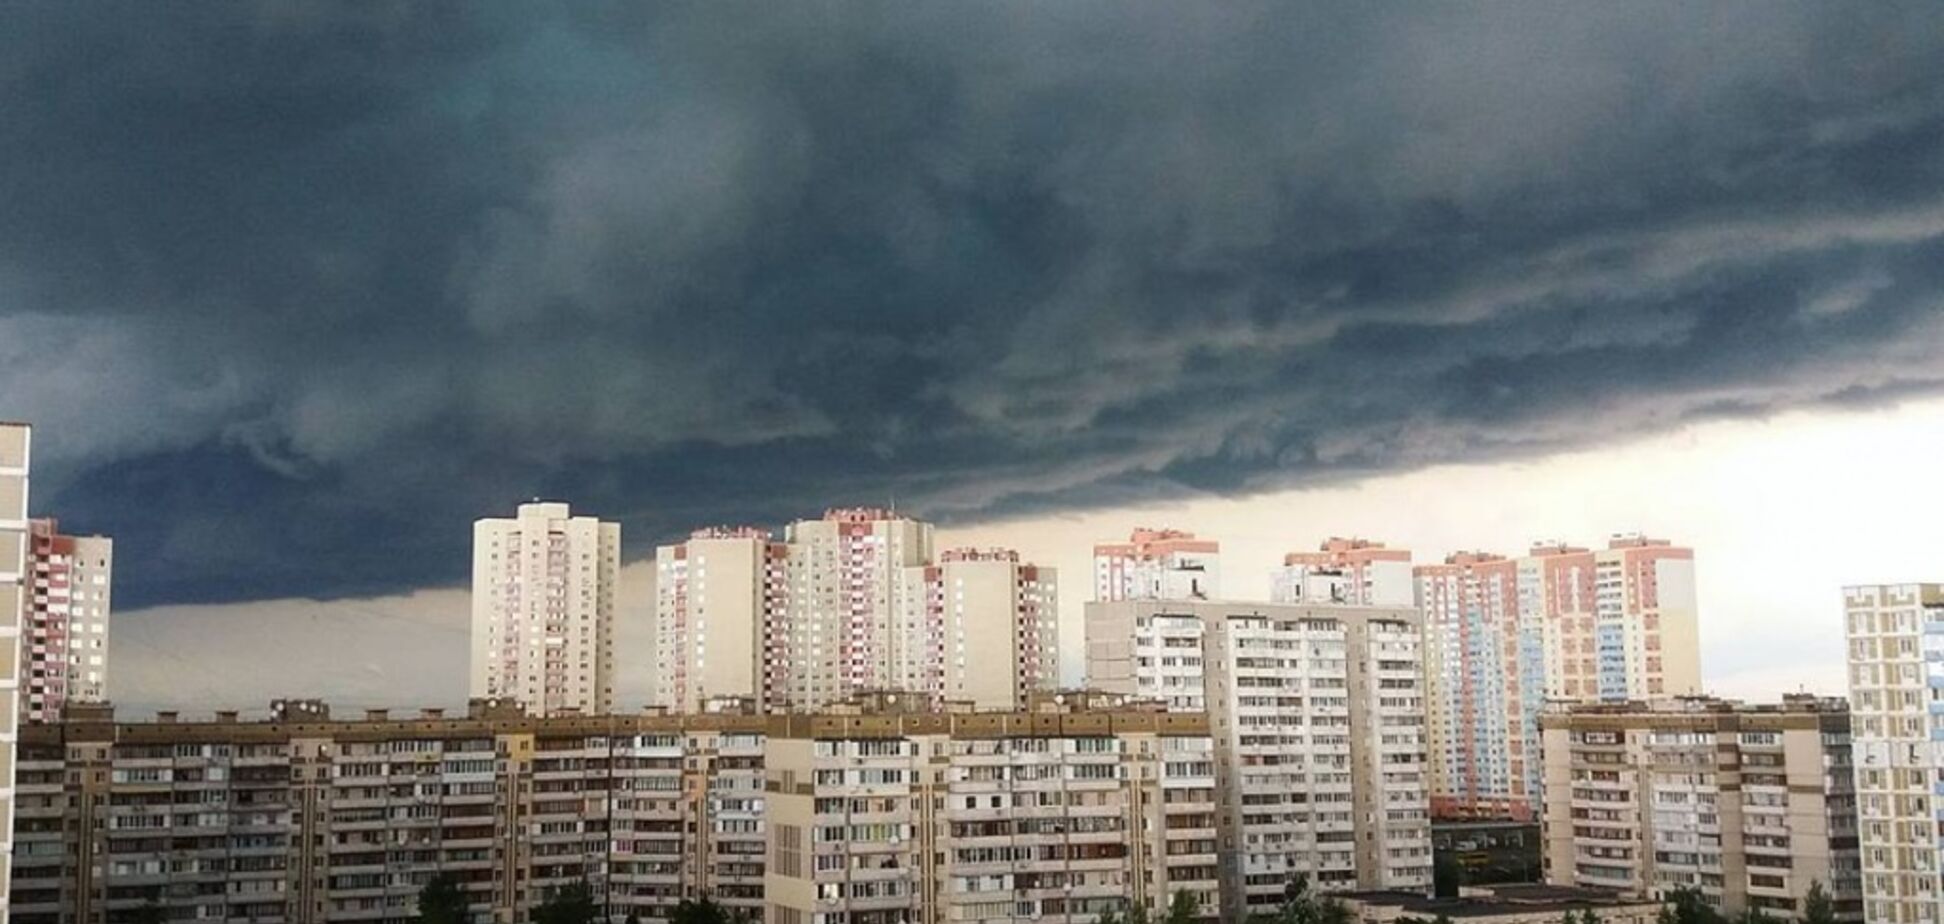 +36 і сильні грози: синоптик уточнила прогноз погоди в Україні